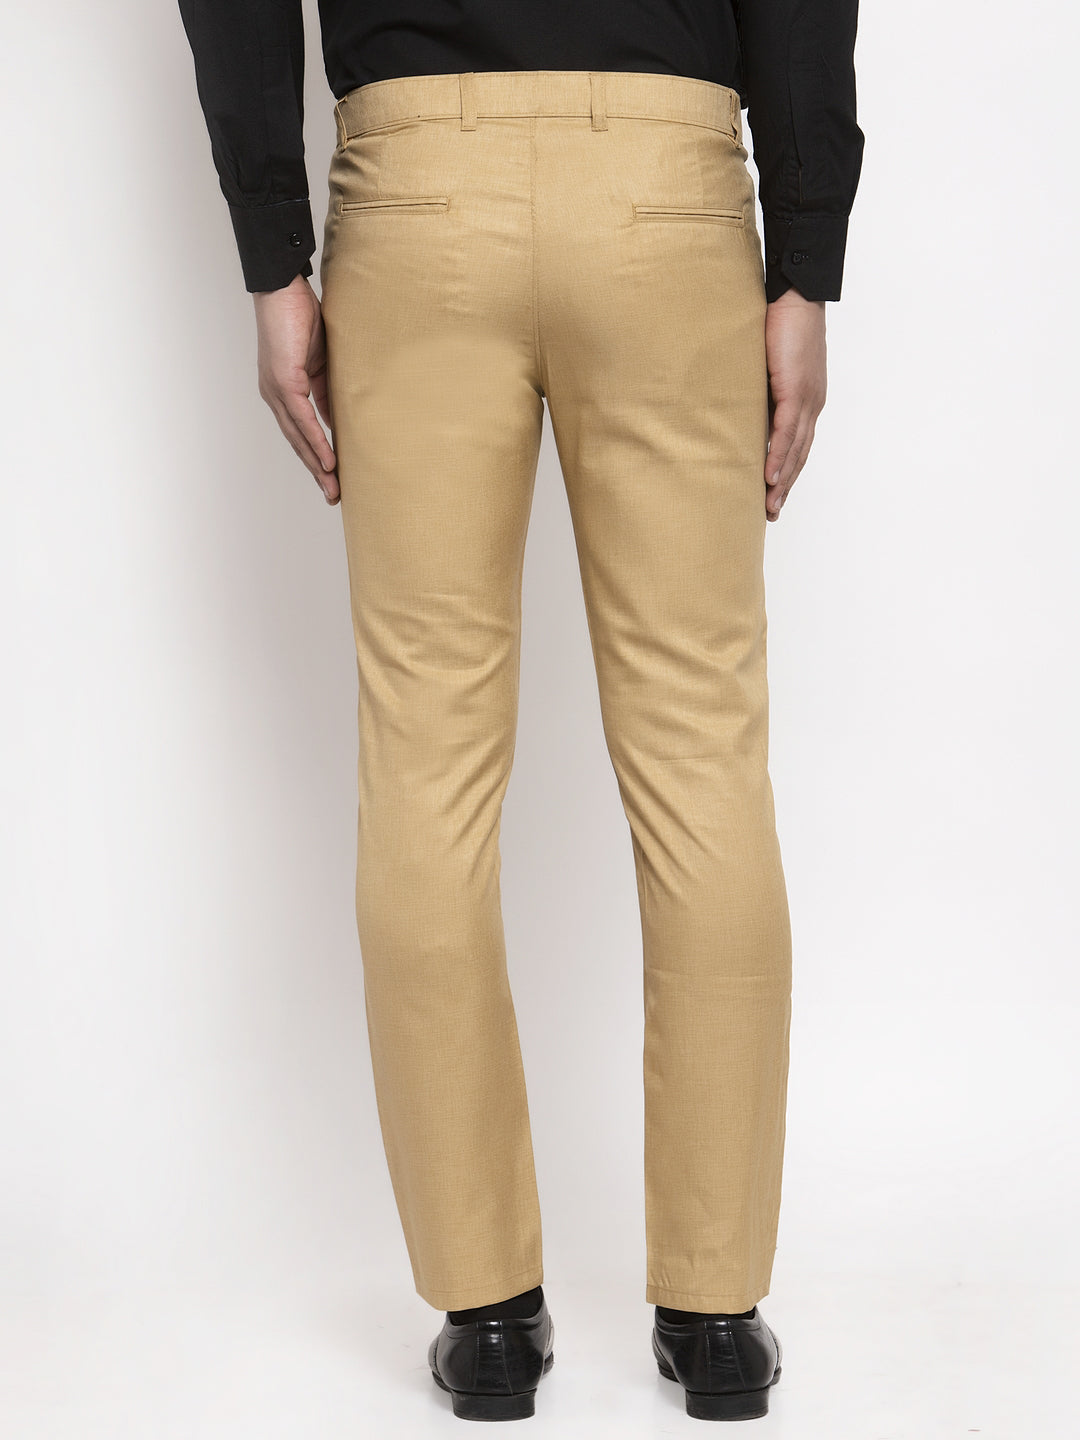 Men's Beige Cotton Solid Formal Trousers ( FGP 258Beige ) - Jainish